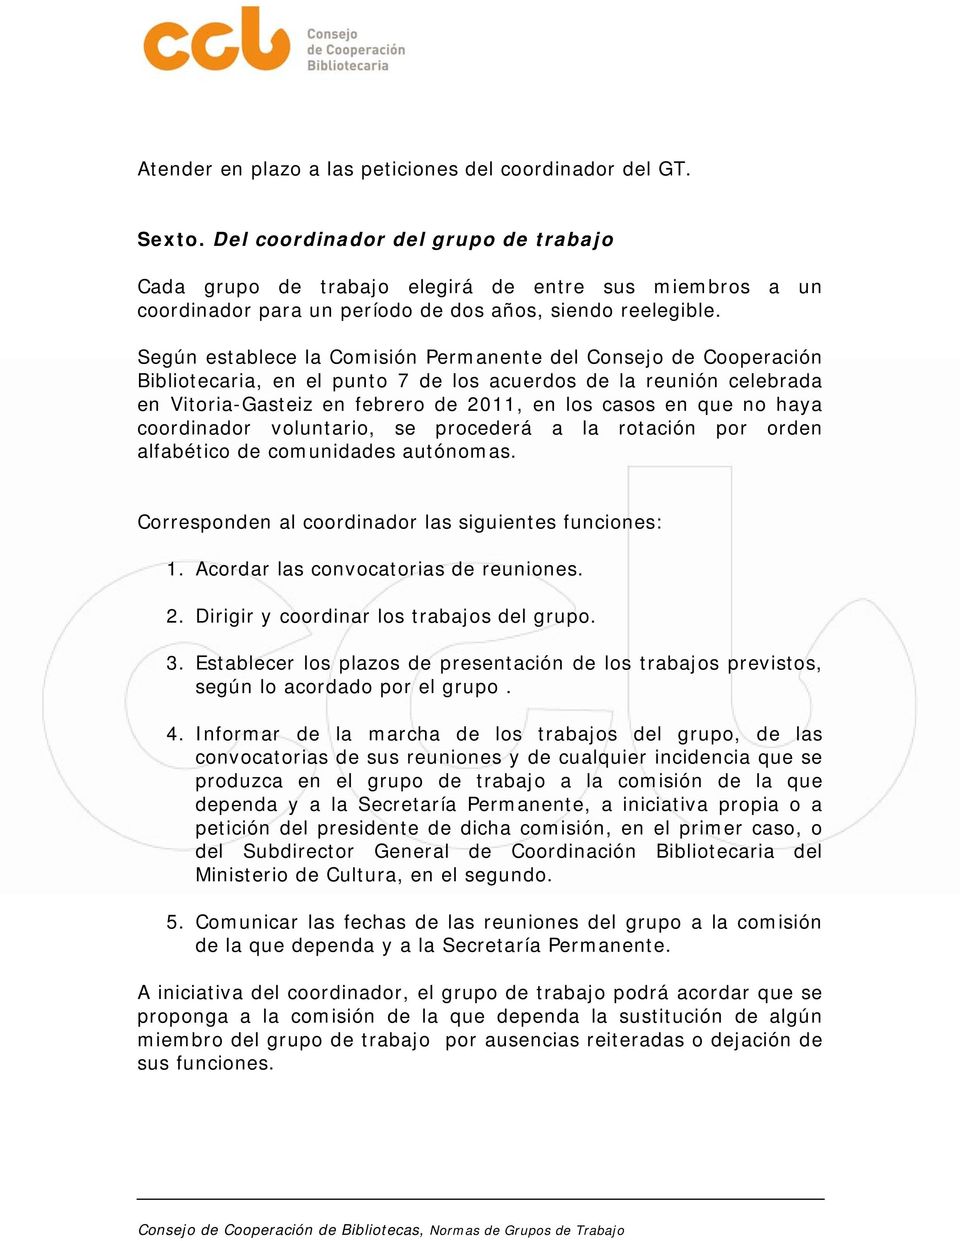 Según establece la Comisión Permanente del Consejo de Cooperación Bibliotecaria, en el punto 7 de los acuerdos de la reunión celebrada en Vitoria-Gasteiz en febrero de 2011, en los casos en que no